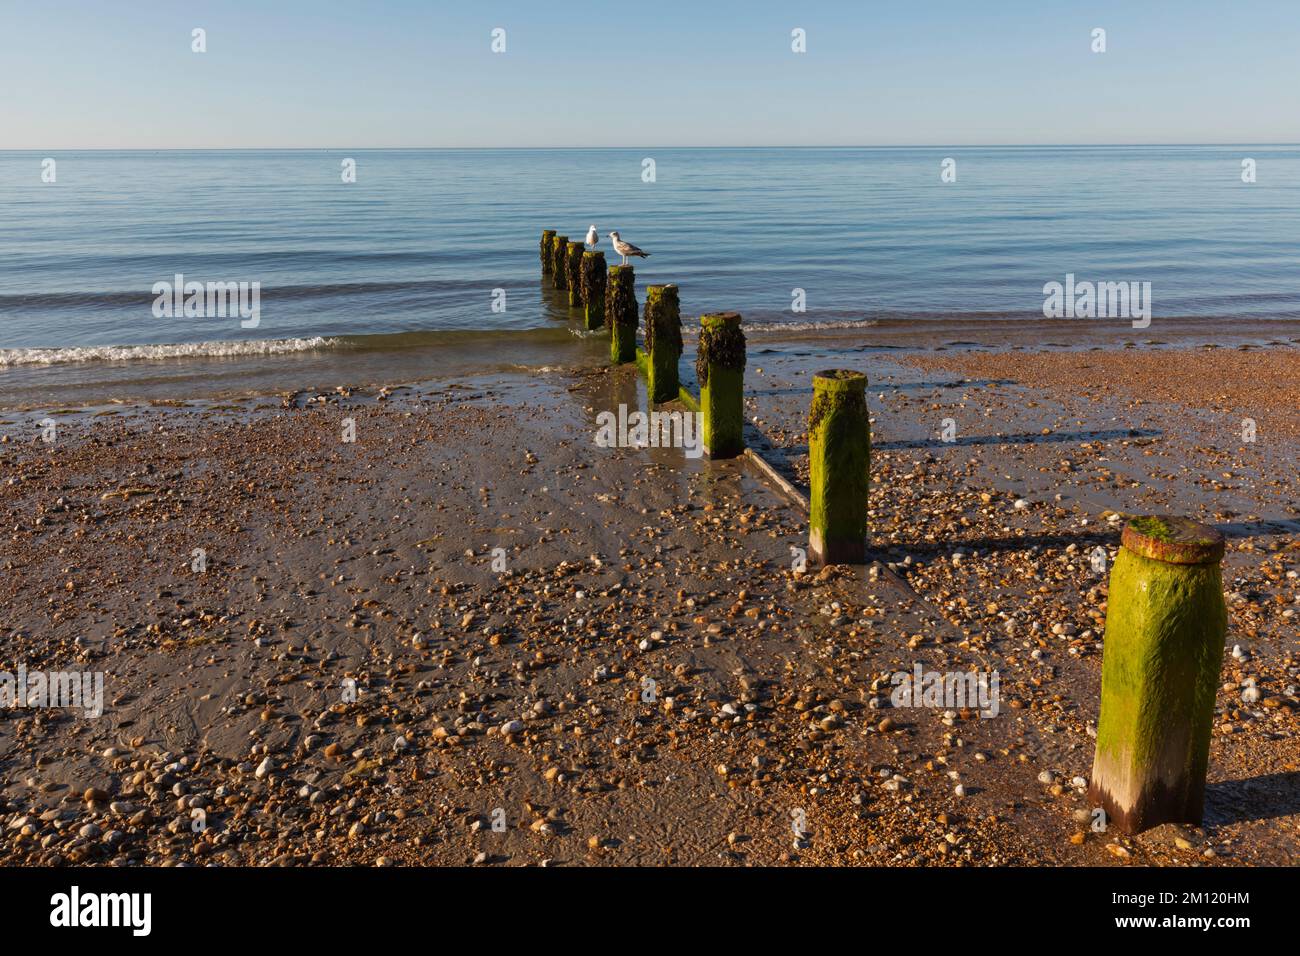 England, West Sussex, Bognor Regis, Bognor Regis Beach Stock Photo